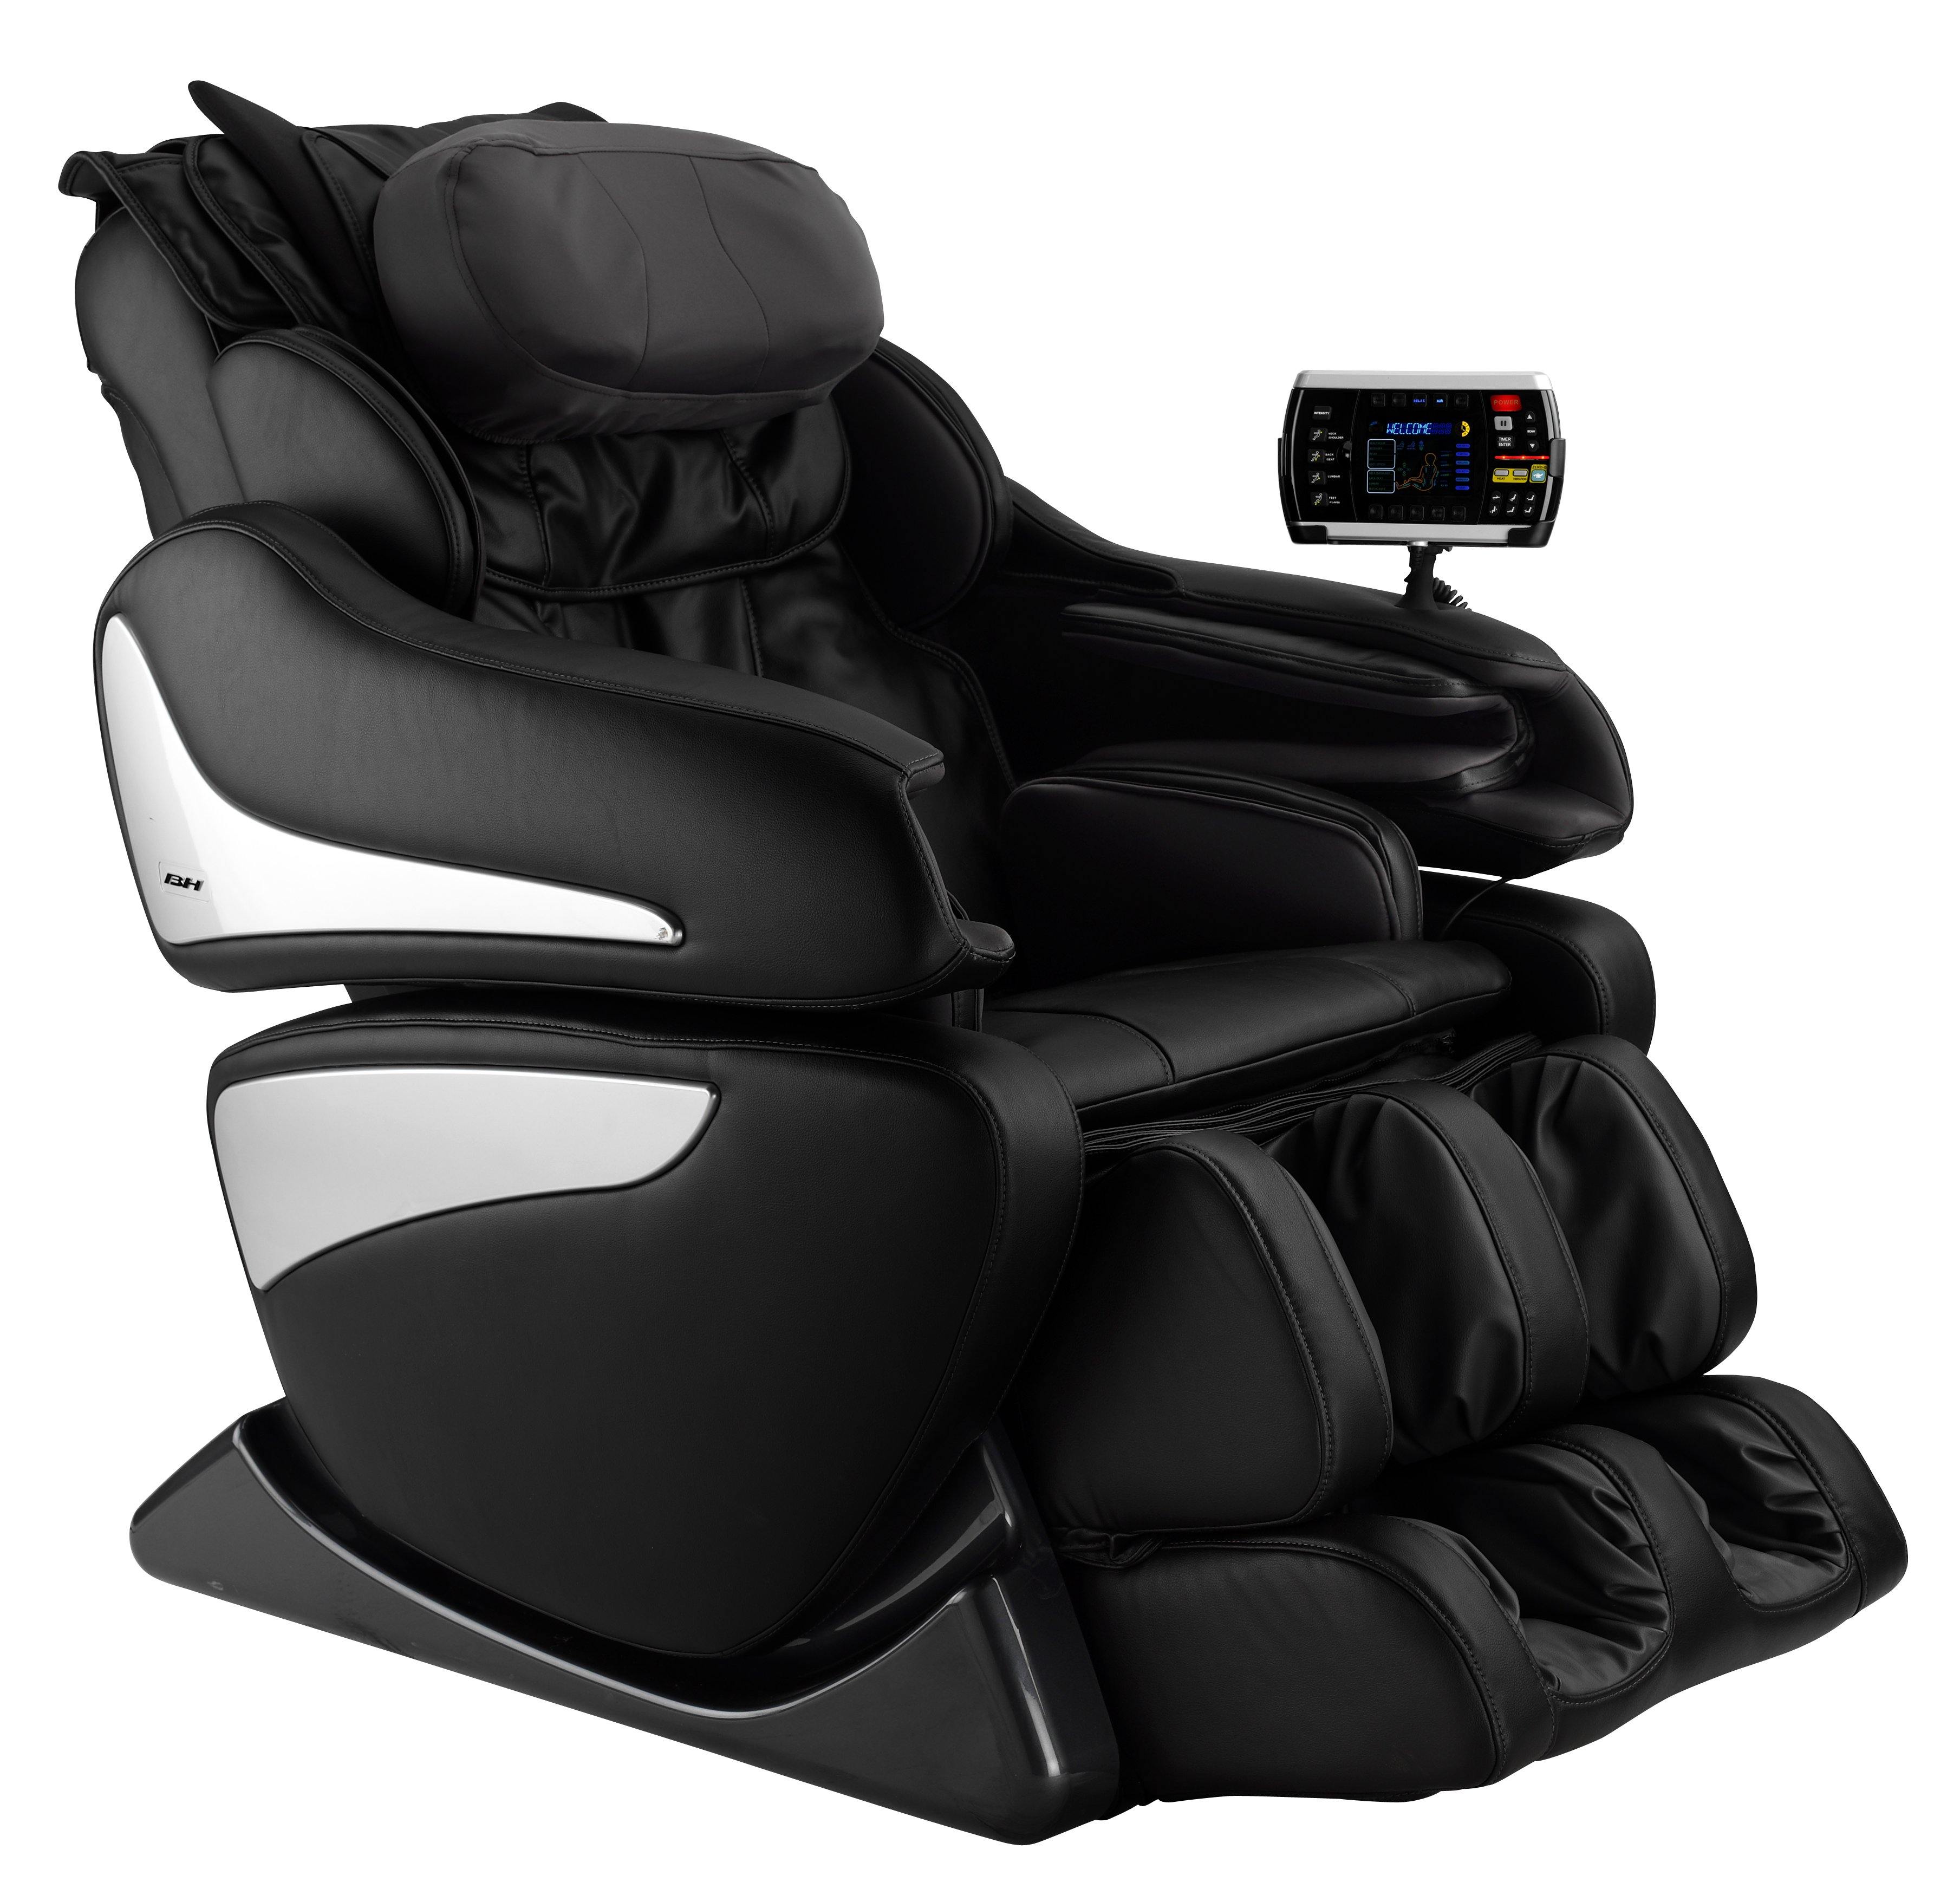 Bh Shiatsu M900 Milan Massage Chair Free Installation Best Gym